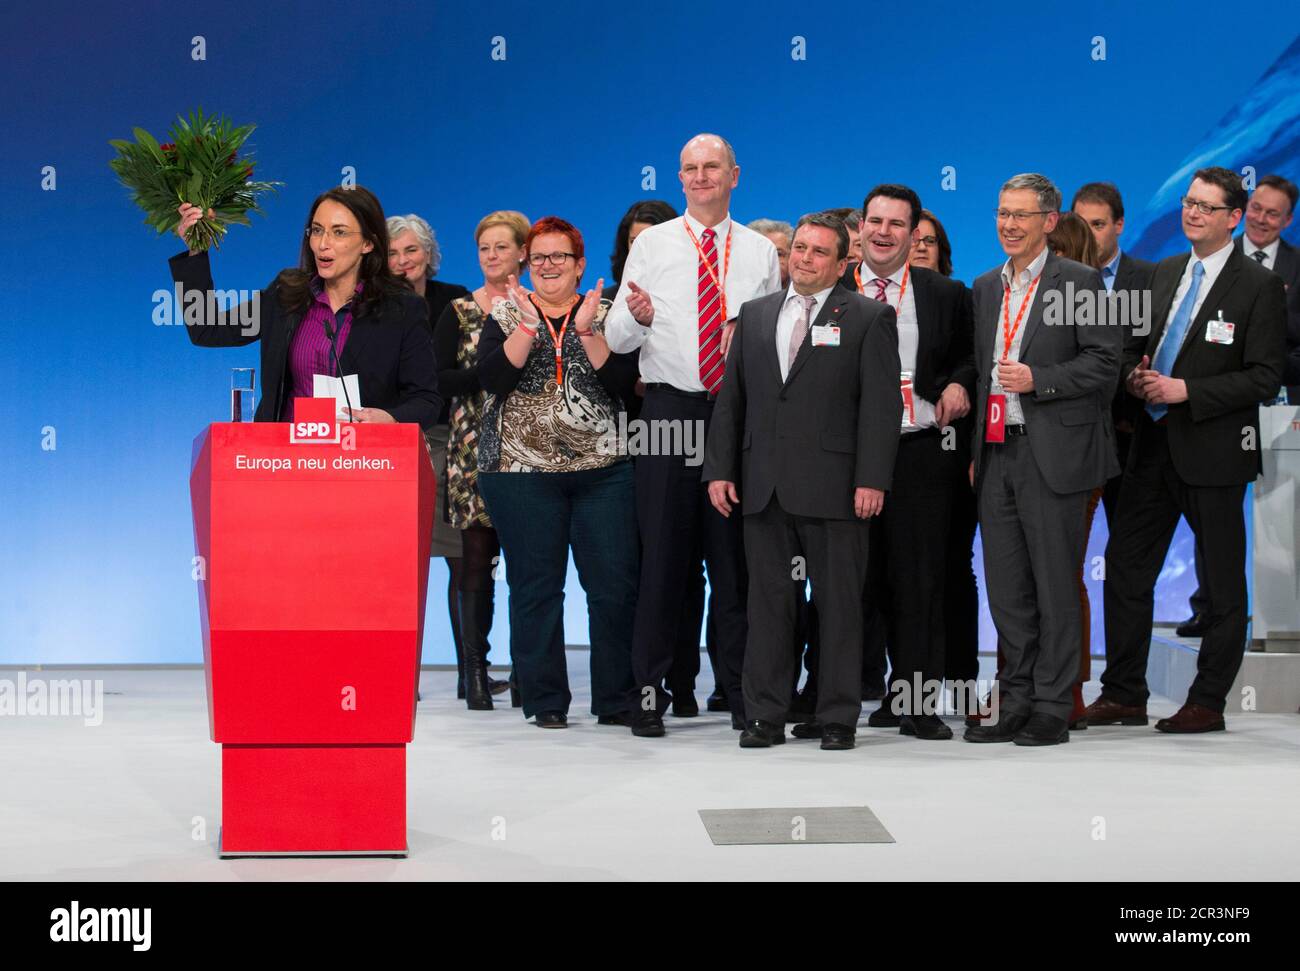 Yasmin Fahimi, du Parti social-démocrate (SPD), fait la vague aux délégués après qu'elle ait été élue secrétaire générale du parti lors d'un congrès extraordinaire du SPD à Berlin le 26 janvier 2014. REUTERS/Thomas Peter (ALLEMAGNE - Tags: POLITIQUE) Banque D'Images